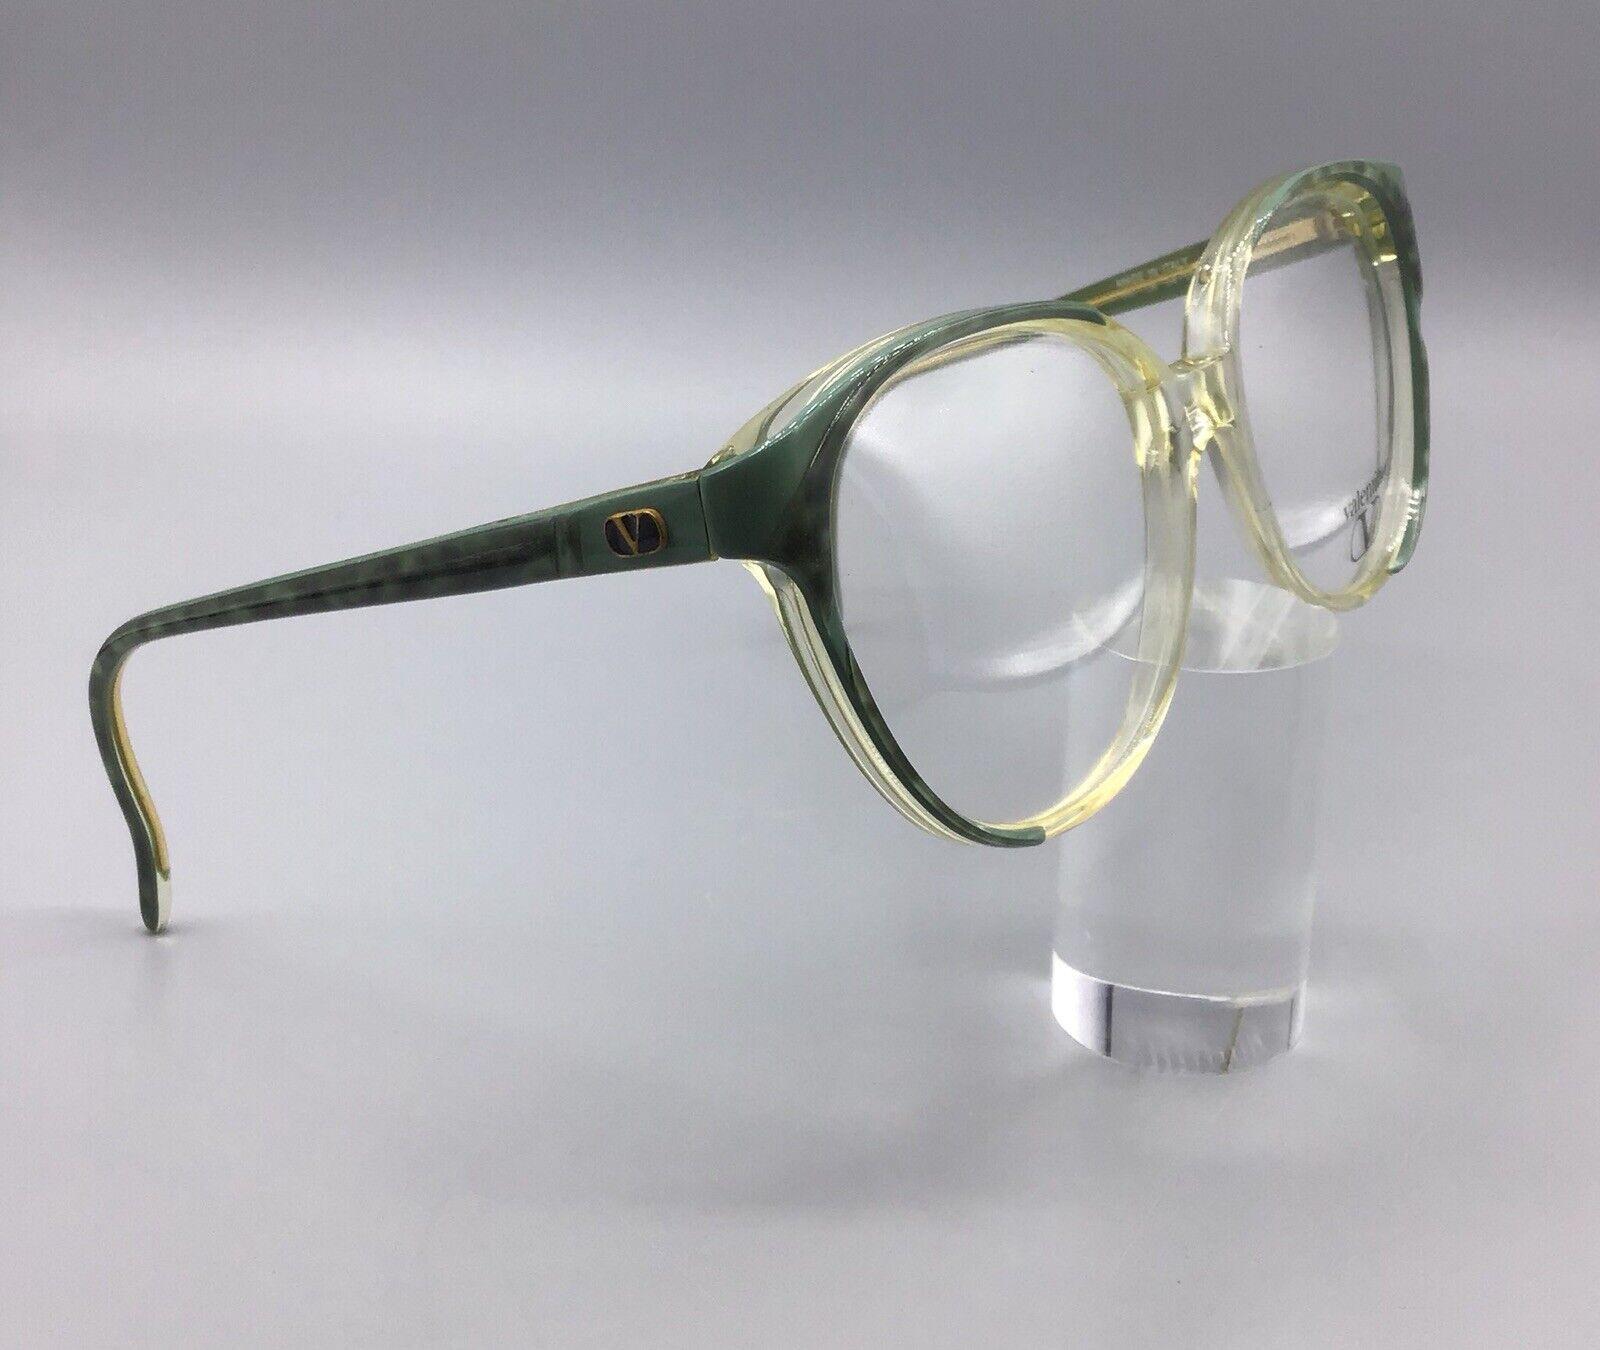 Valentino occhiale vintage eyewear 116 08 brillen lunettes eyeglasses